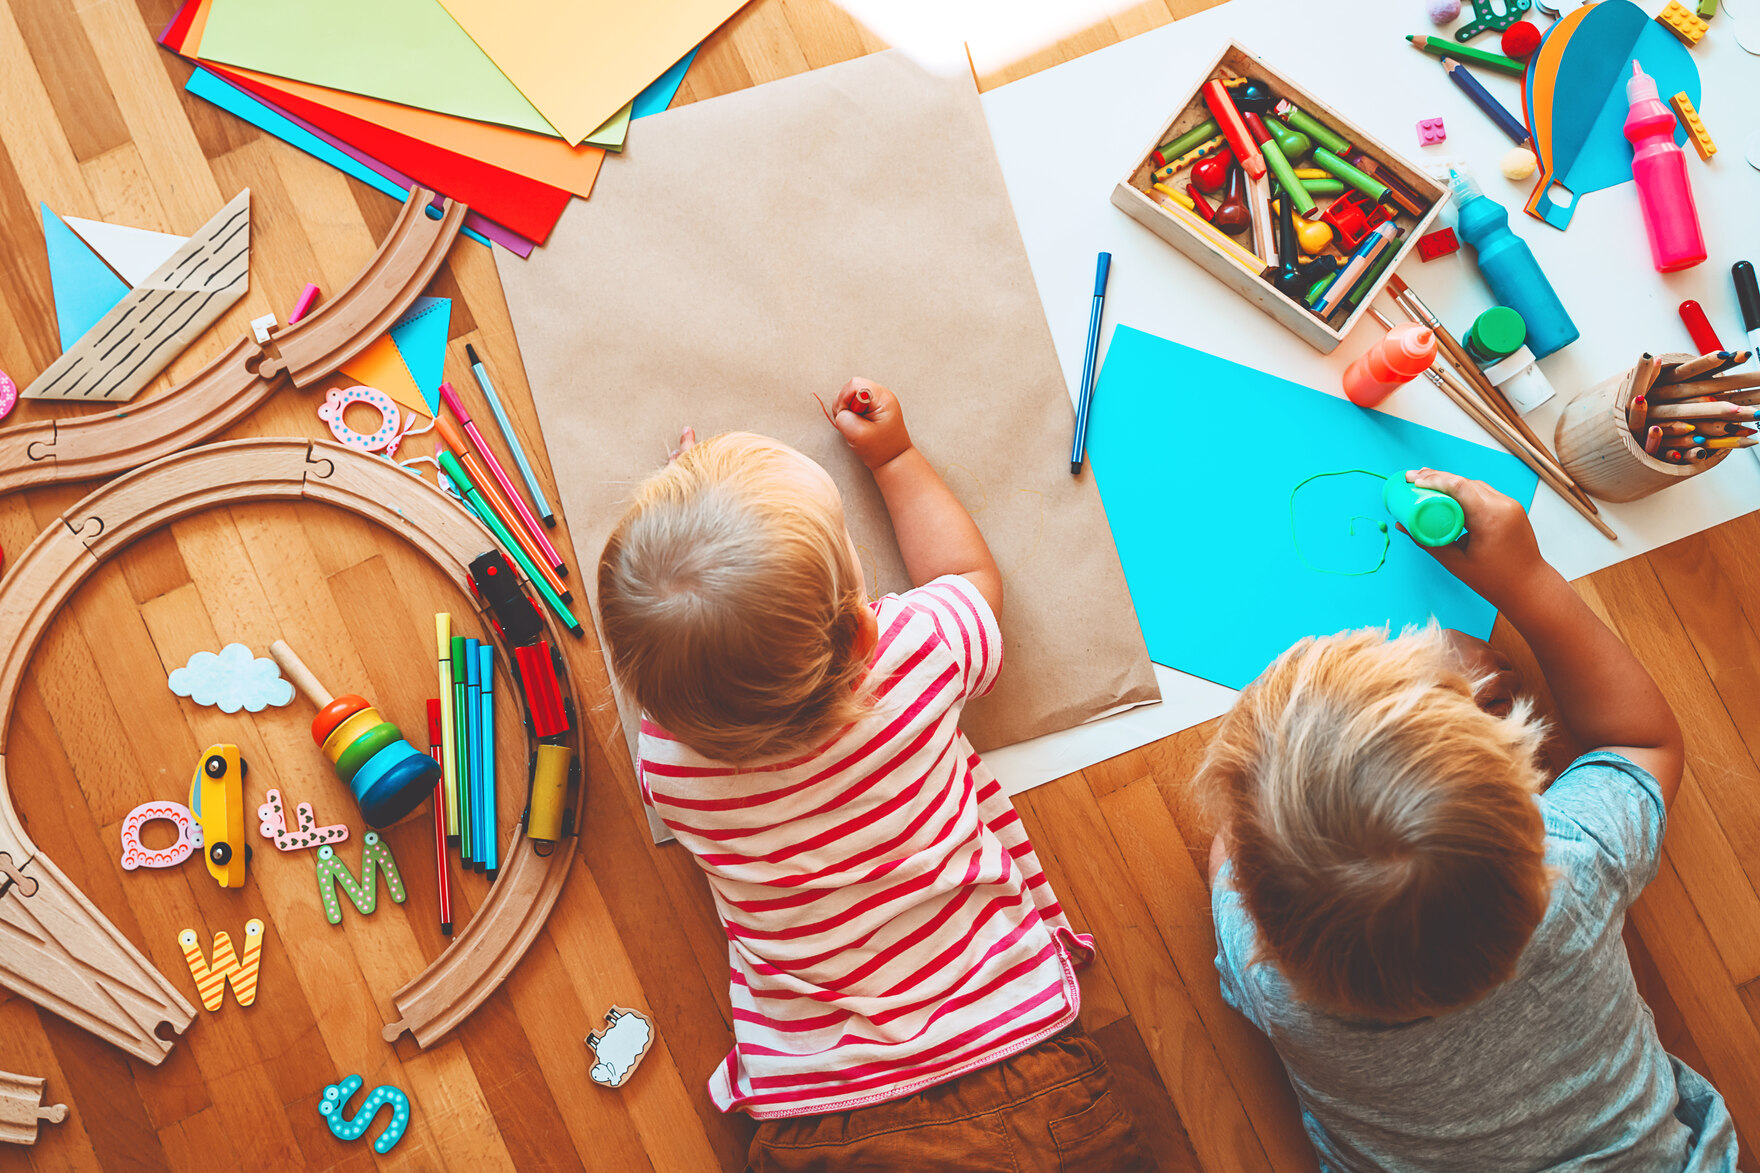 Zwei Kinder liegen auf dem Laminat zwischen Spielzeug und malen